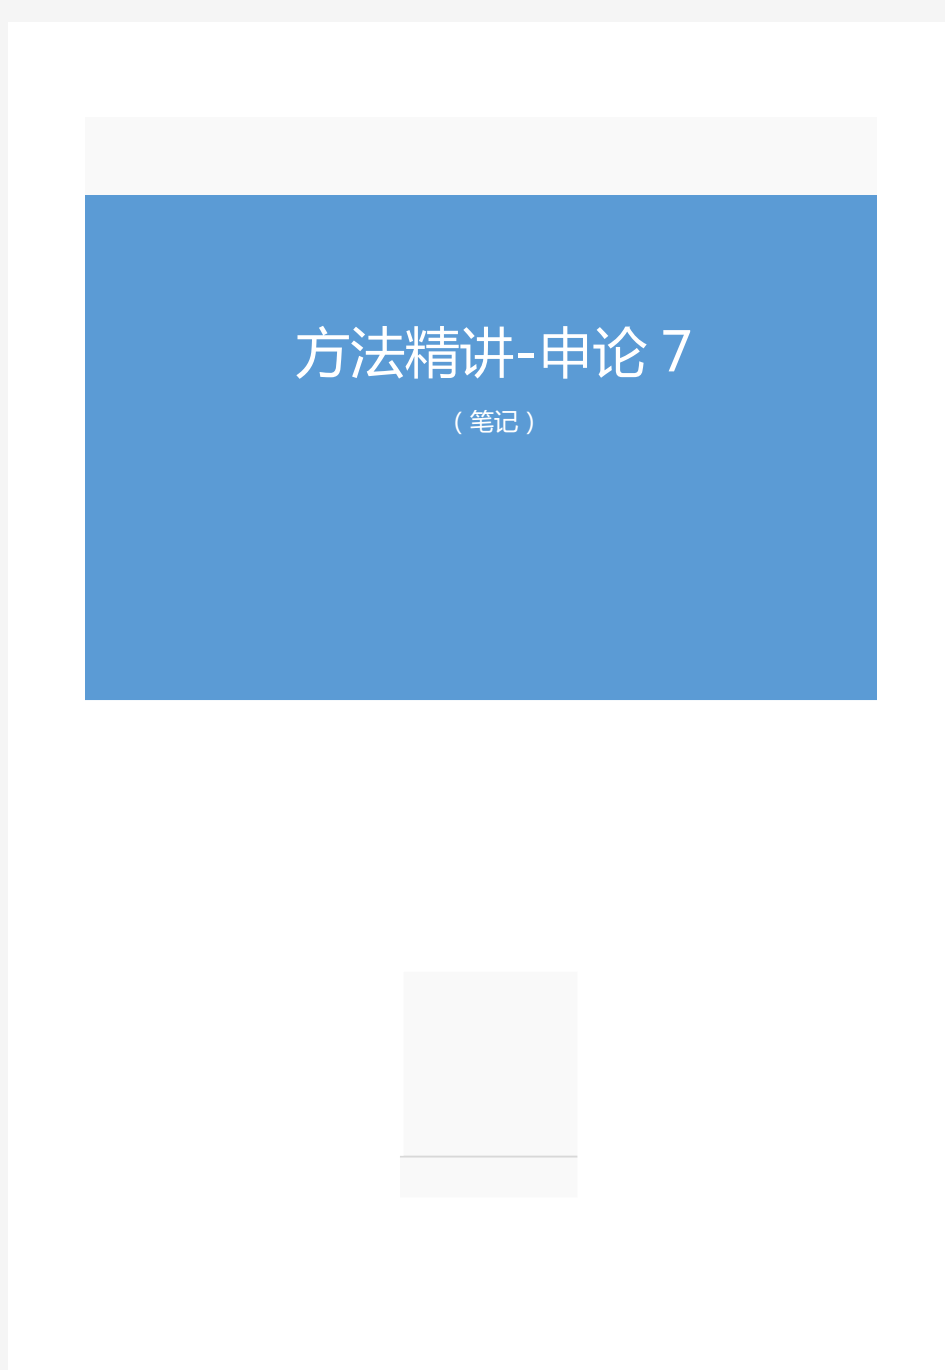 2019.12.04方法精讲-申论7(笔记)(2020省考笔试线上双师特训班)